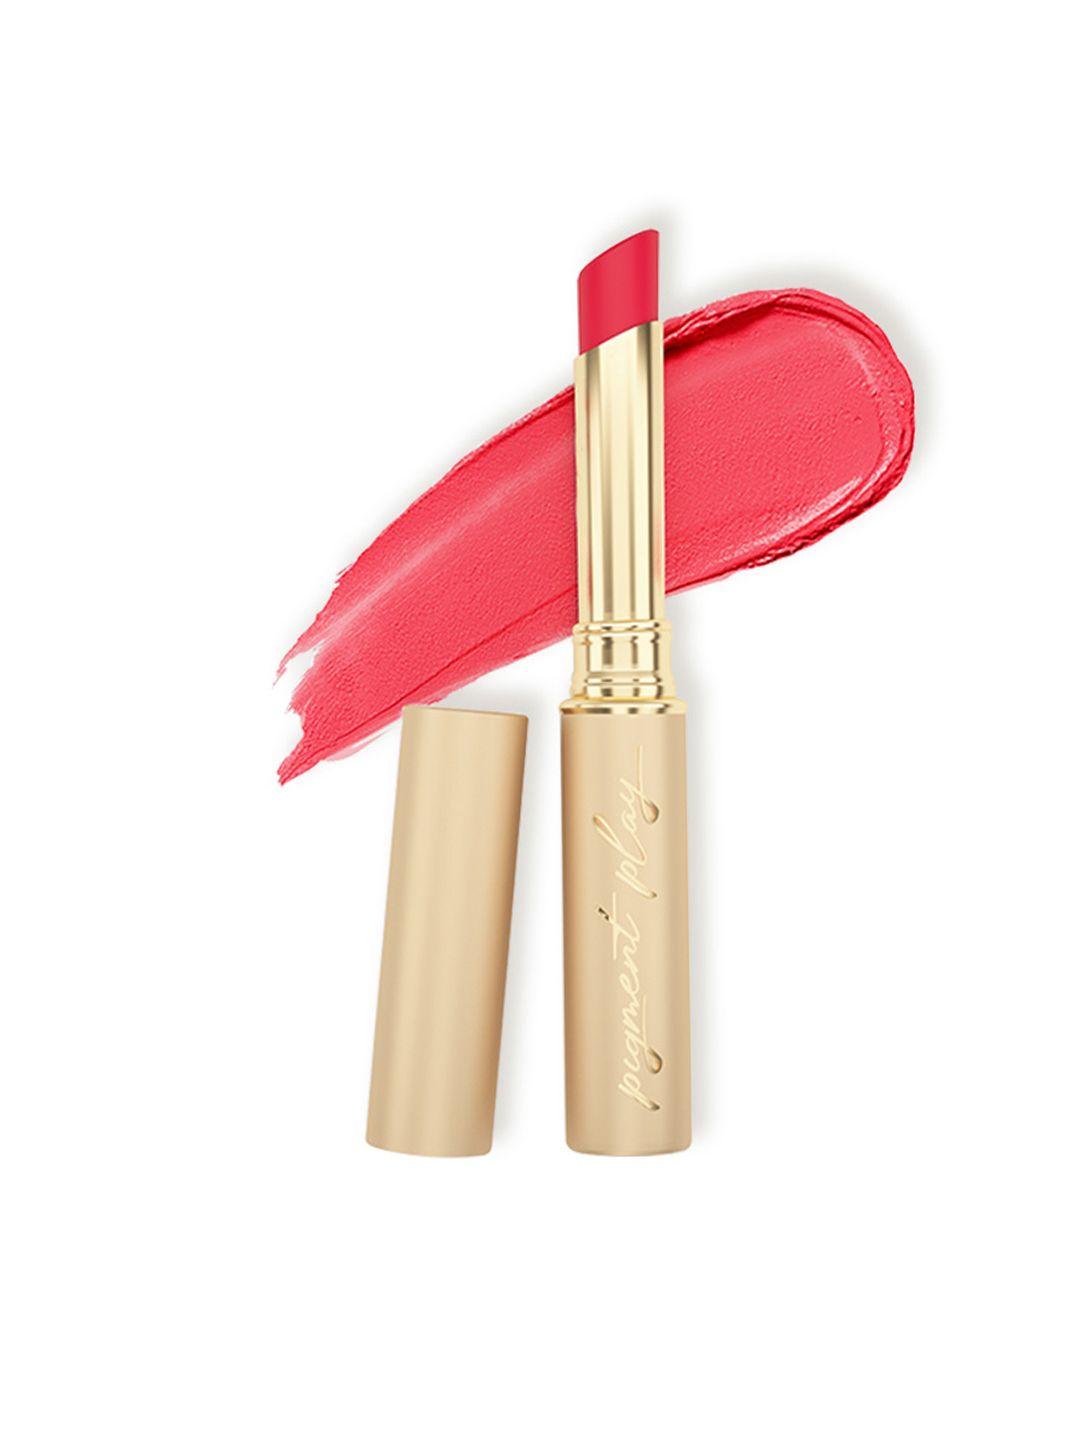 pigment play performer lightweight matte lipstick - playdate